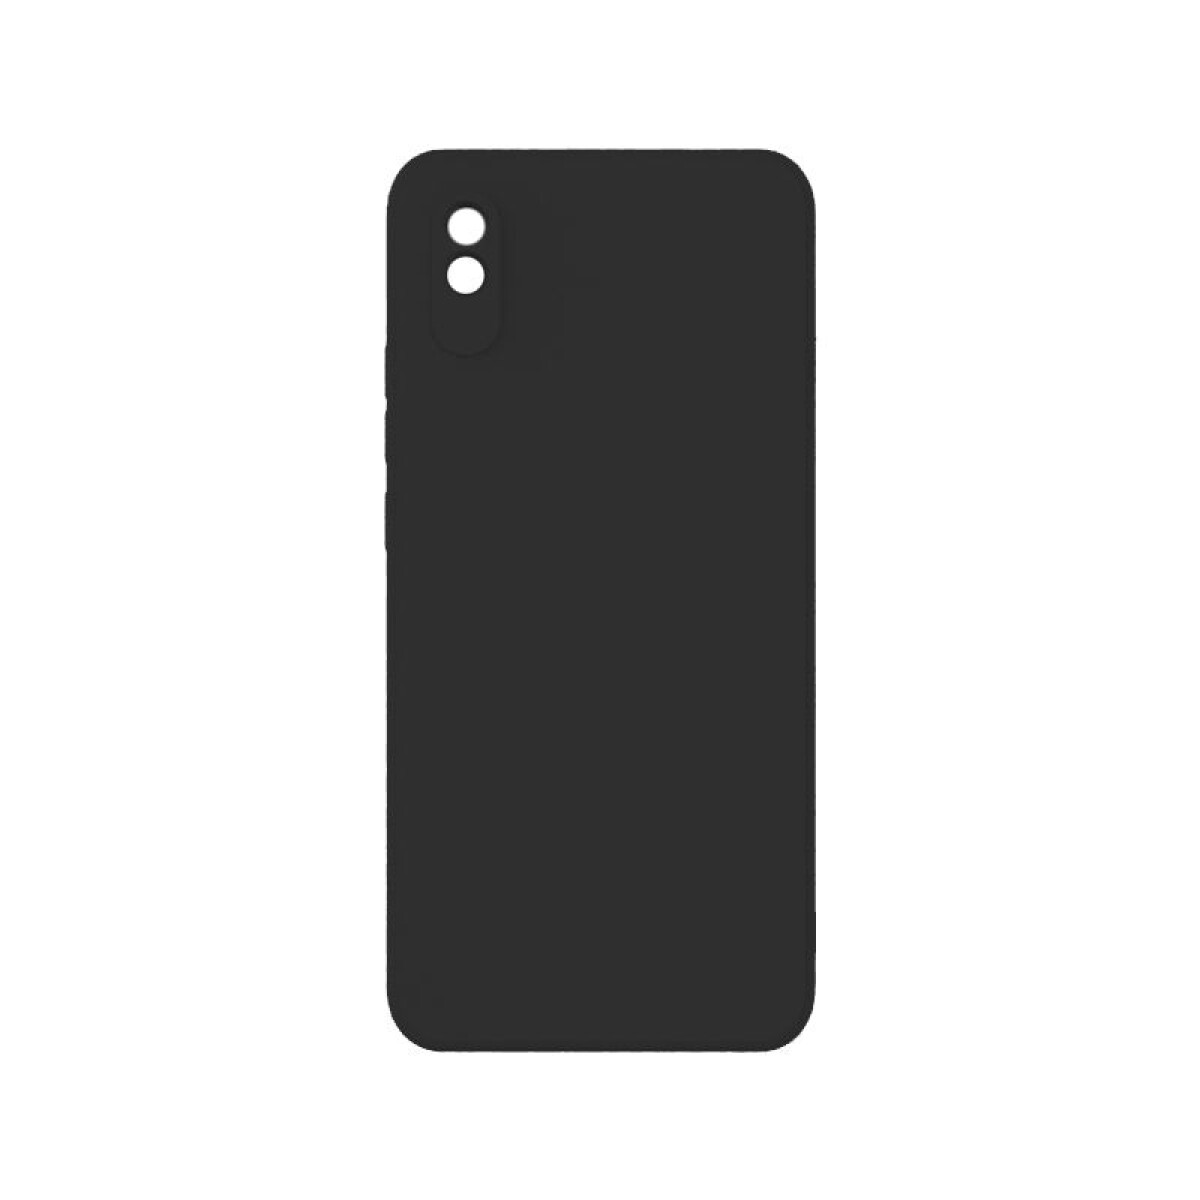 Protector Case de Silicona para Xiaomi Redmi 9A Negro